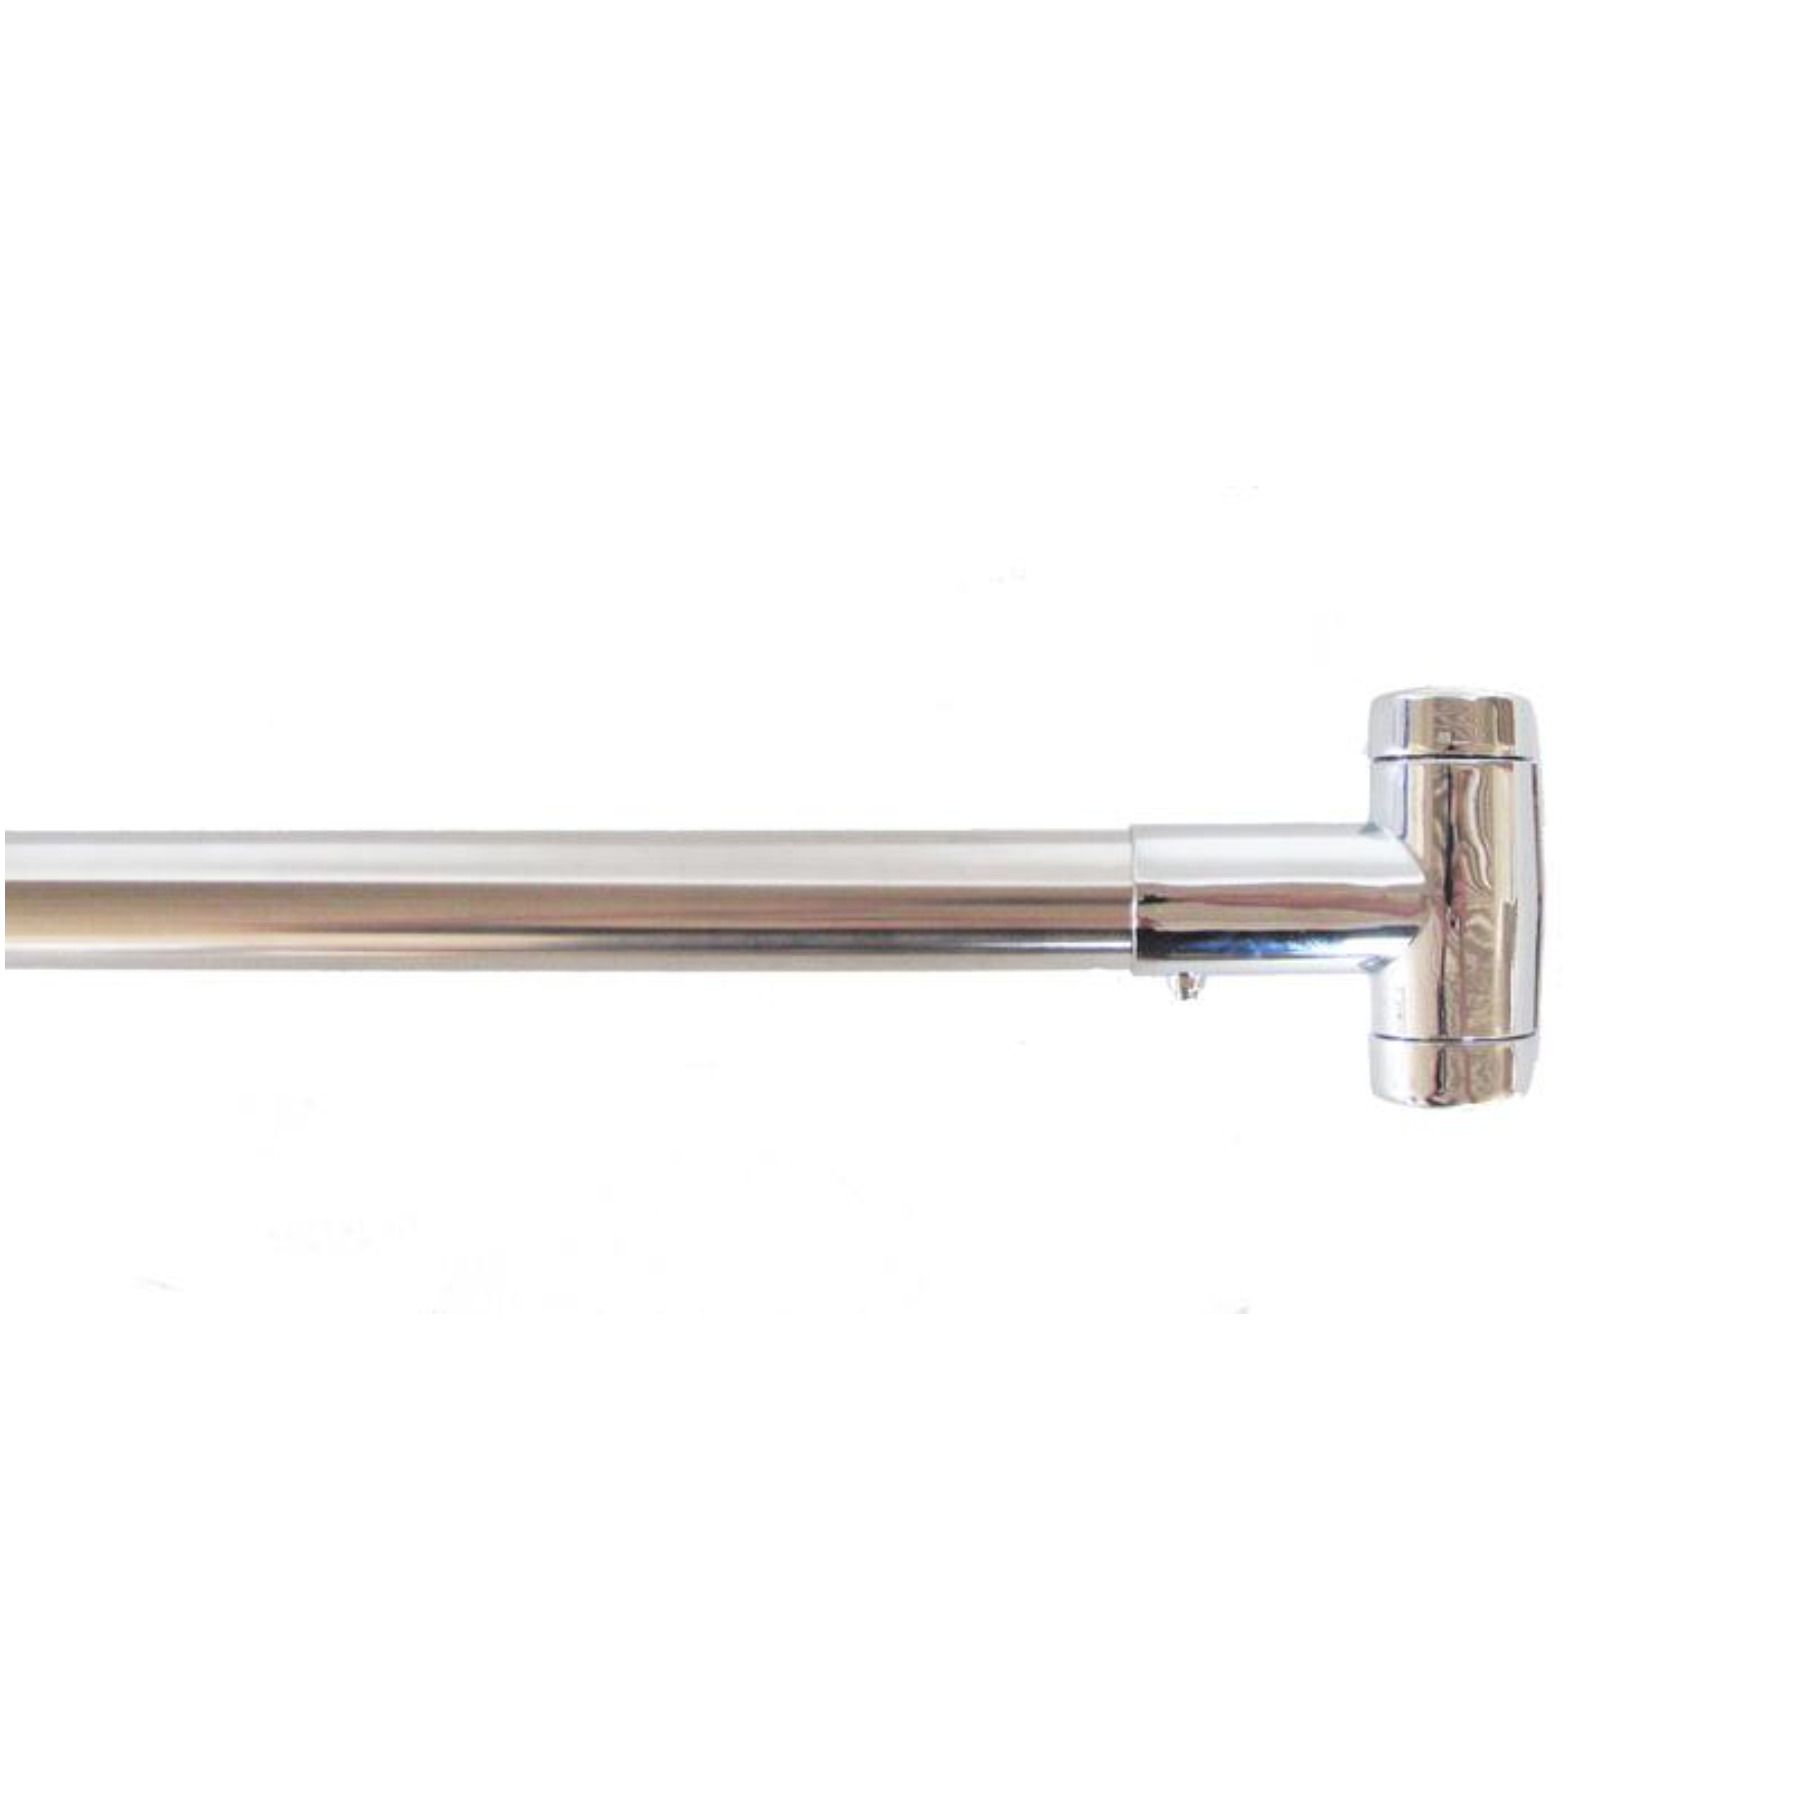 16-2767 Chrome Adjustable Curved Shower Rod